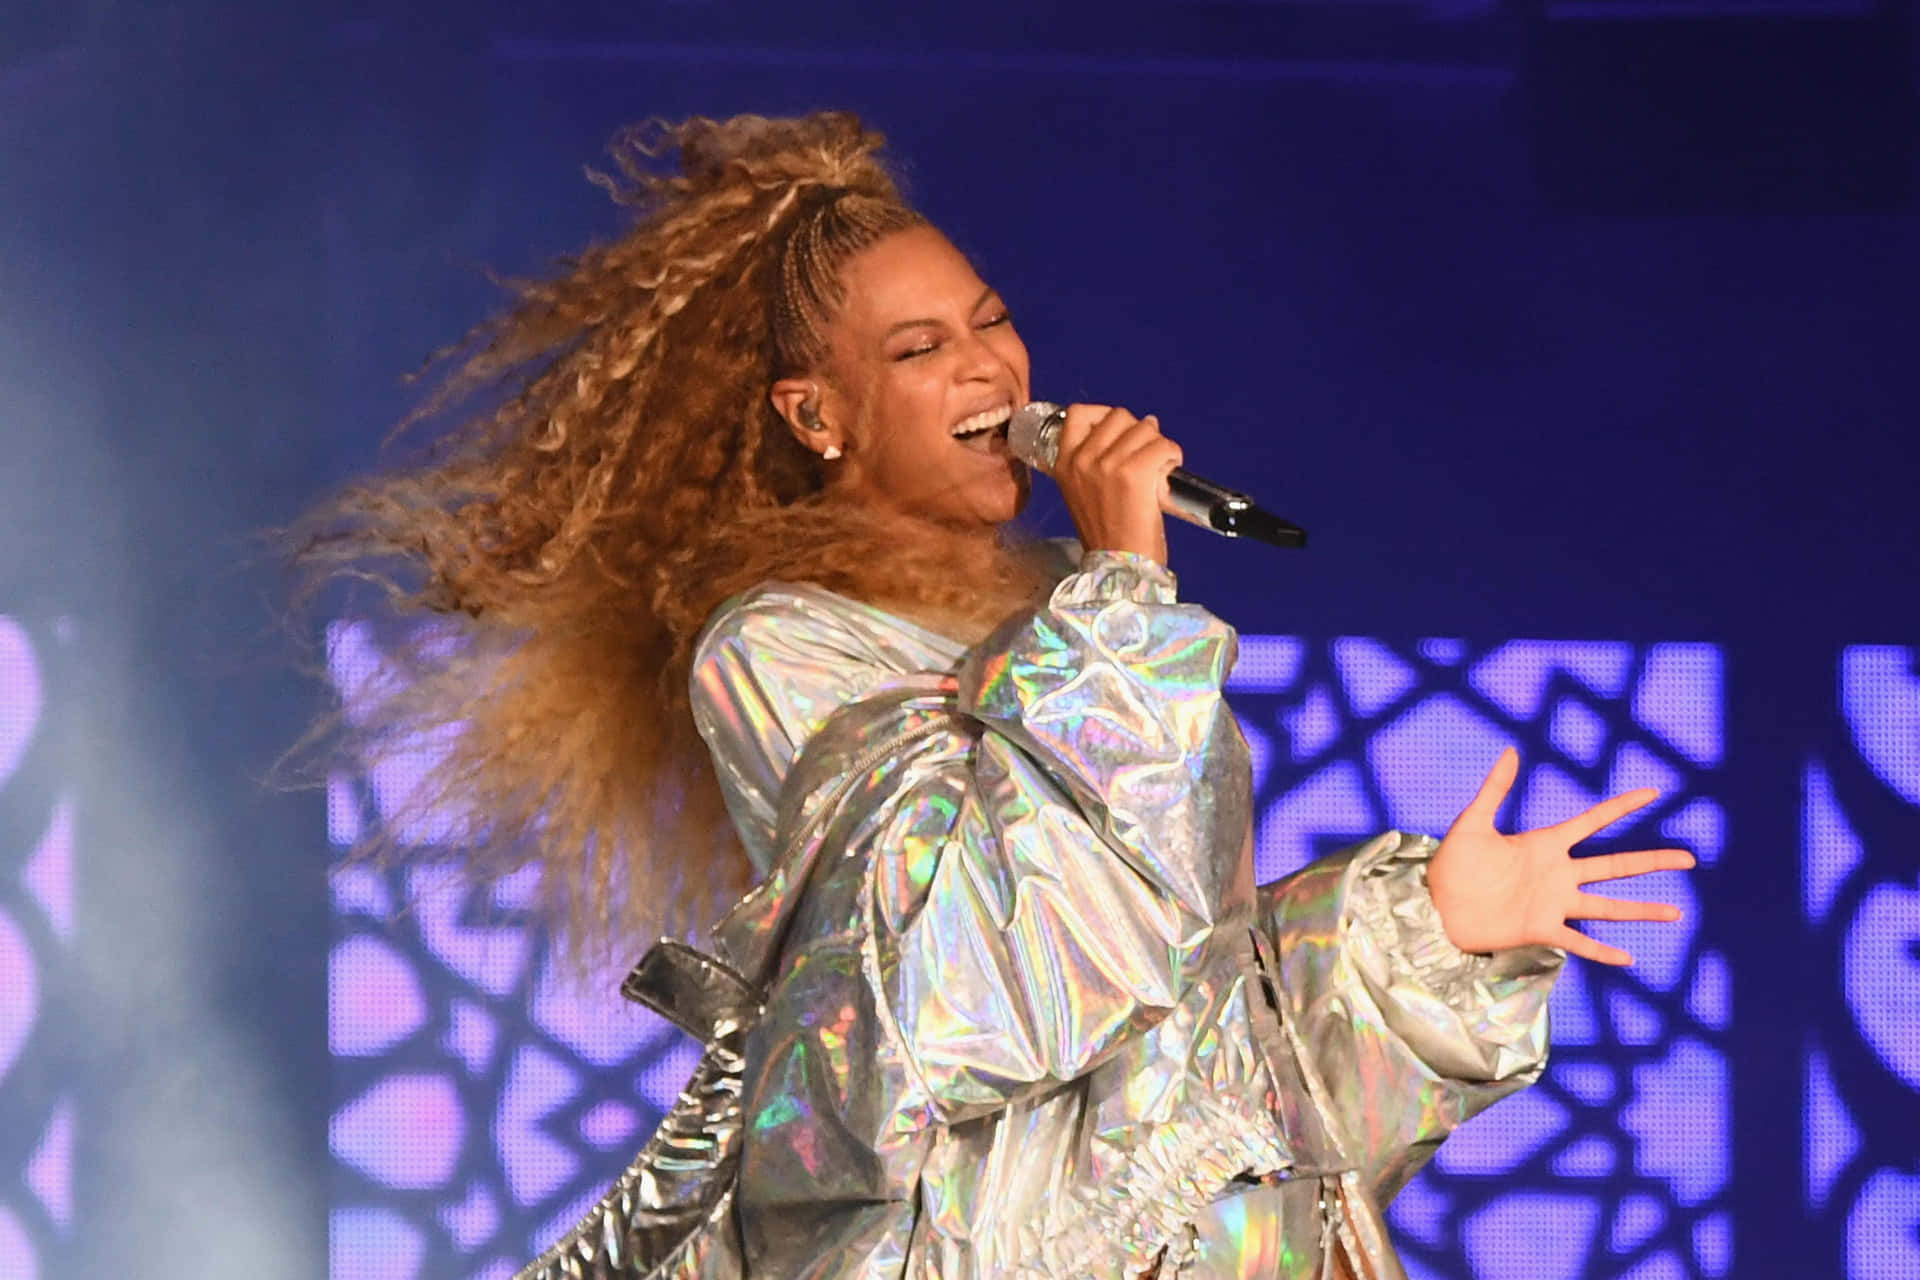 Beyoncésingt Ihren Hit-single 